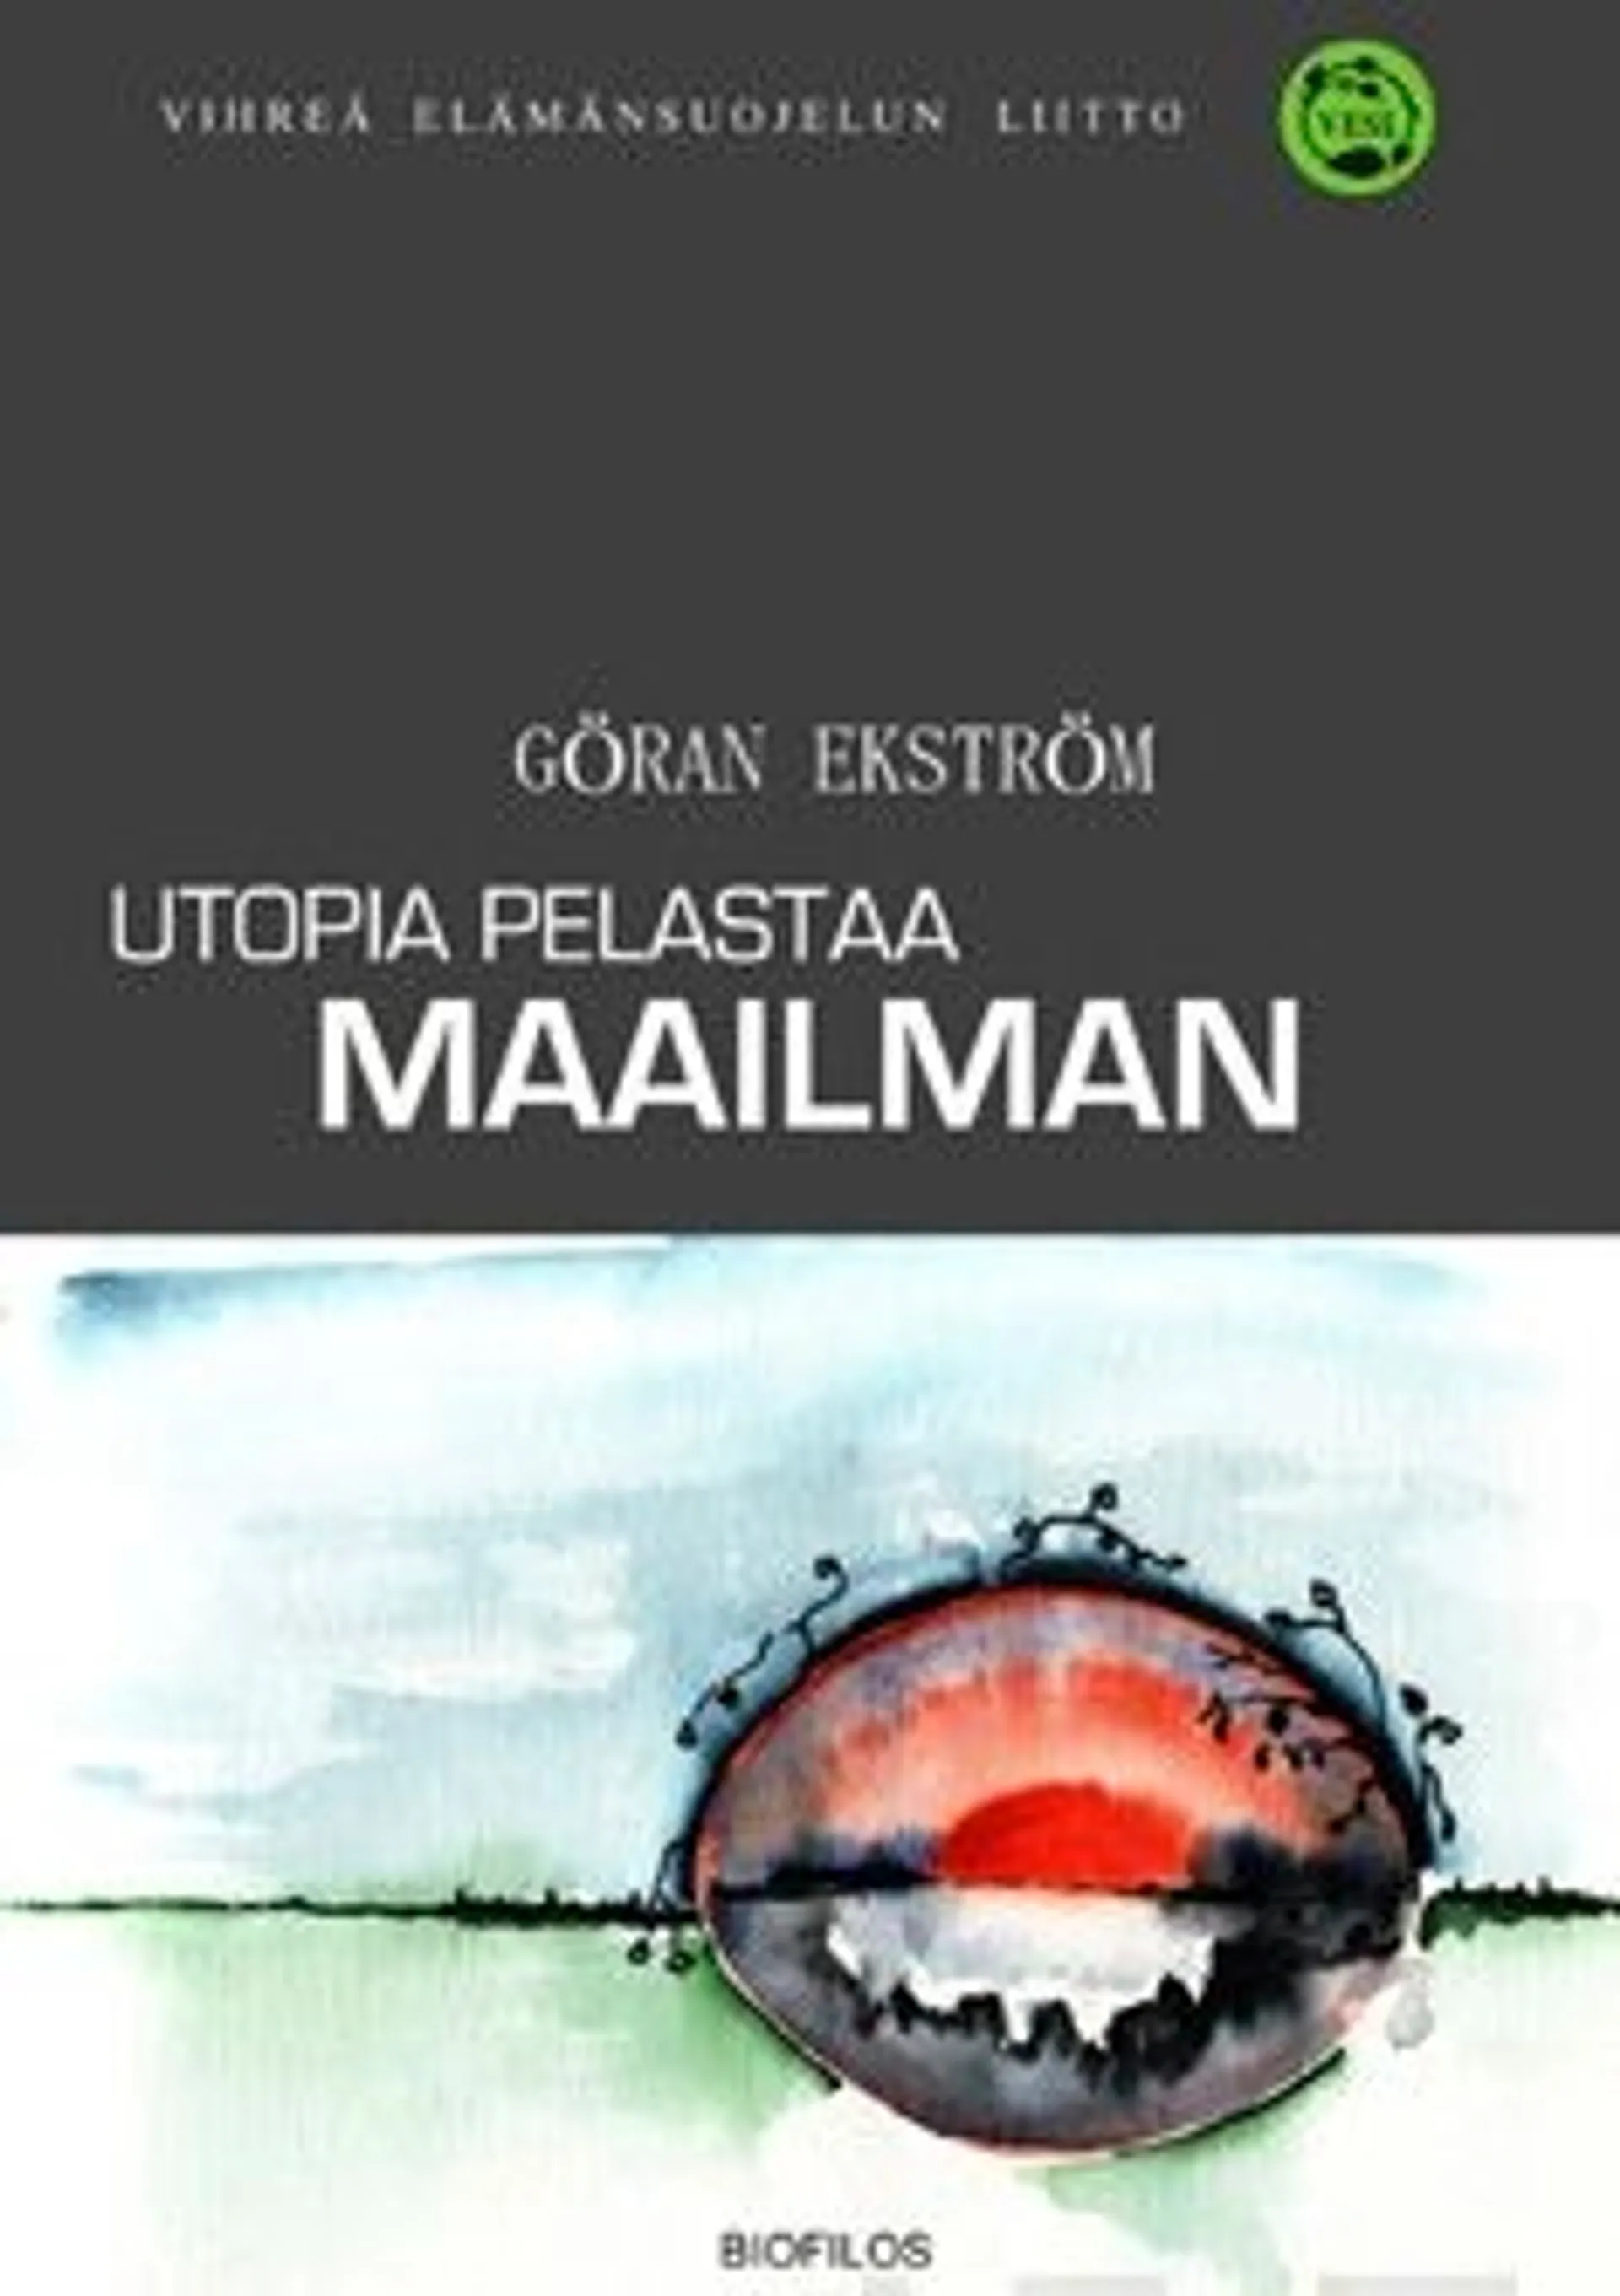 Ekström, Utopia pelastaa maailman